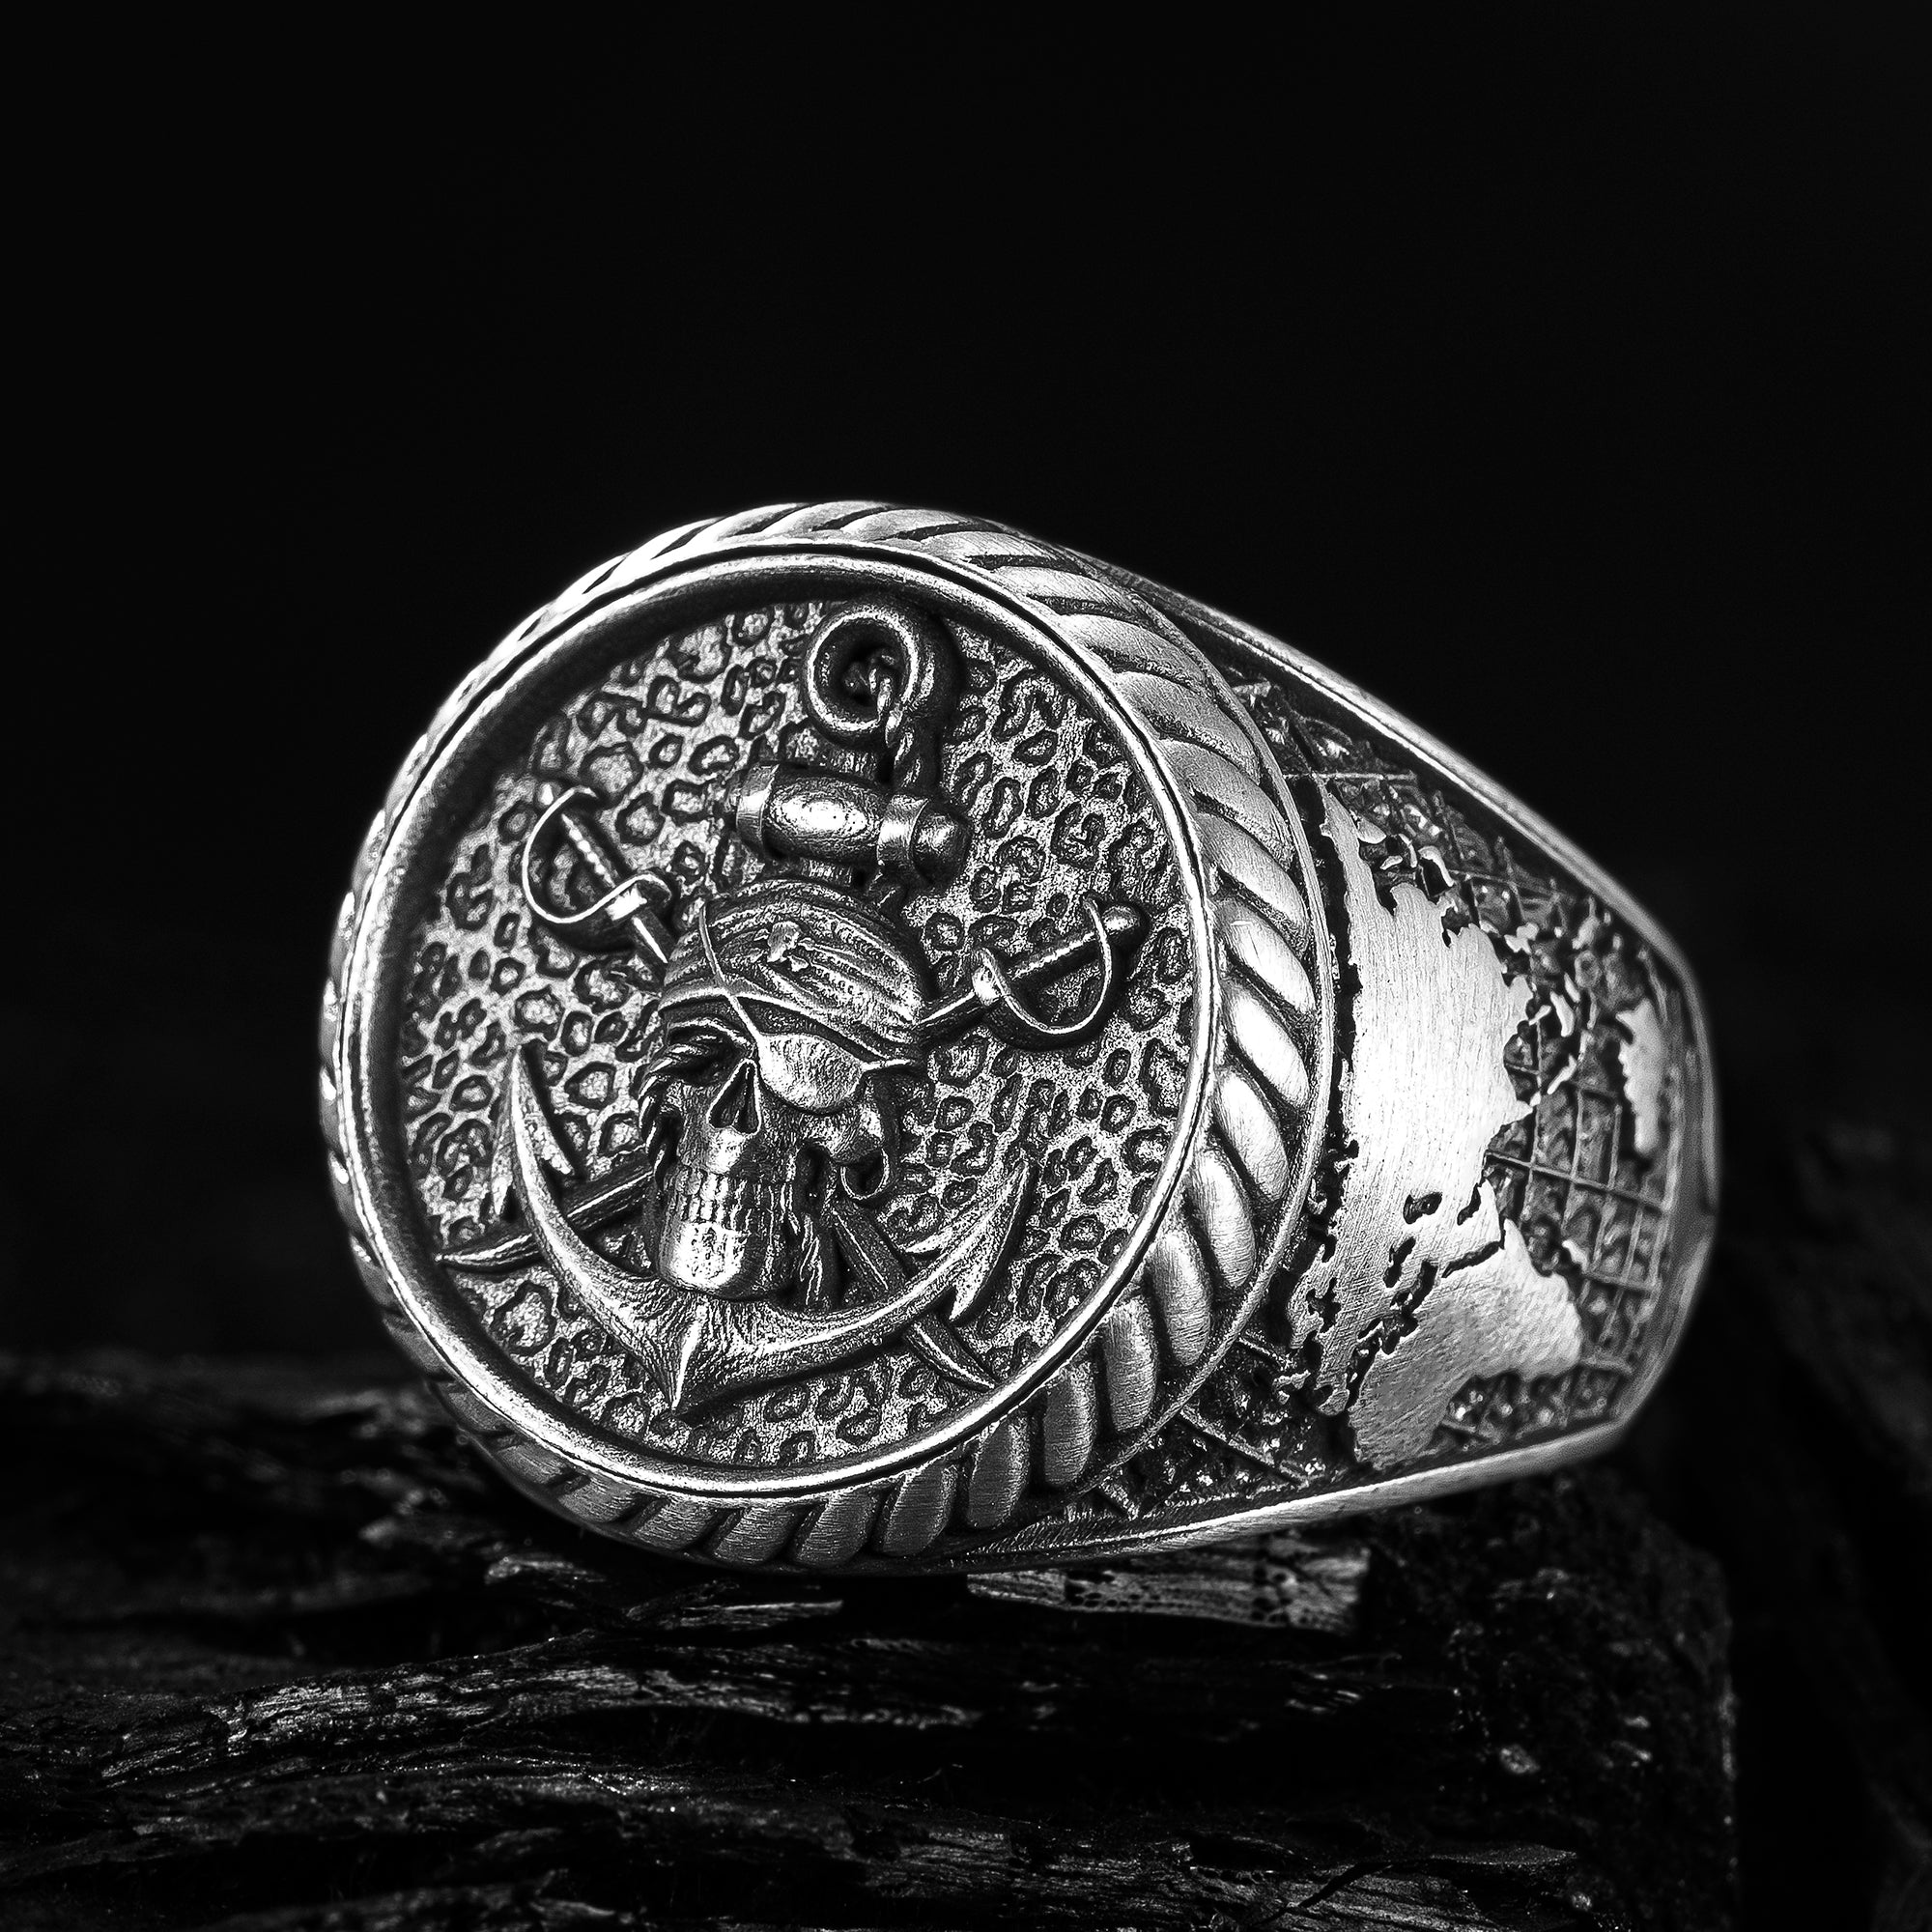 Skull and Anchor Men's Ring, Sailor Men's Ring, Skull Ring, 925 Sterling Pirate Ring, Handmade Silver Men's Ring